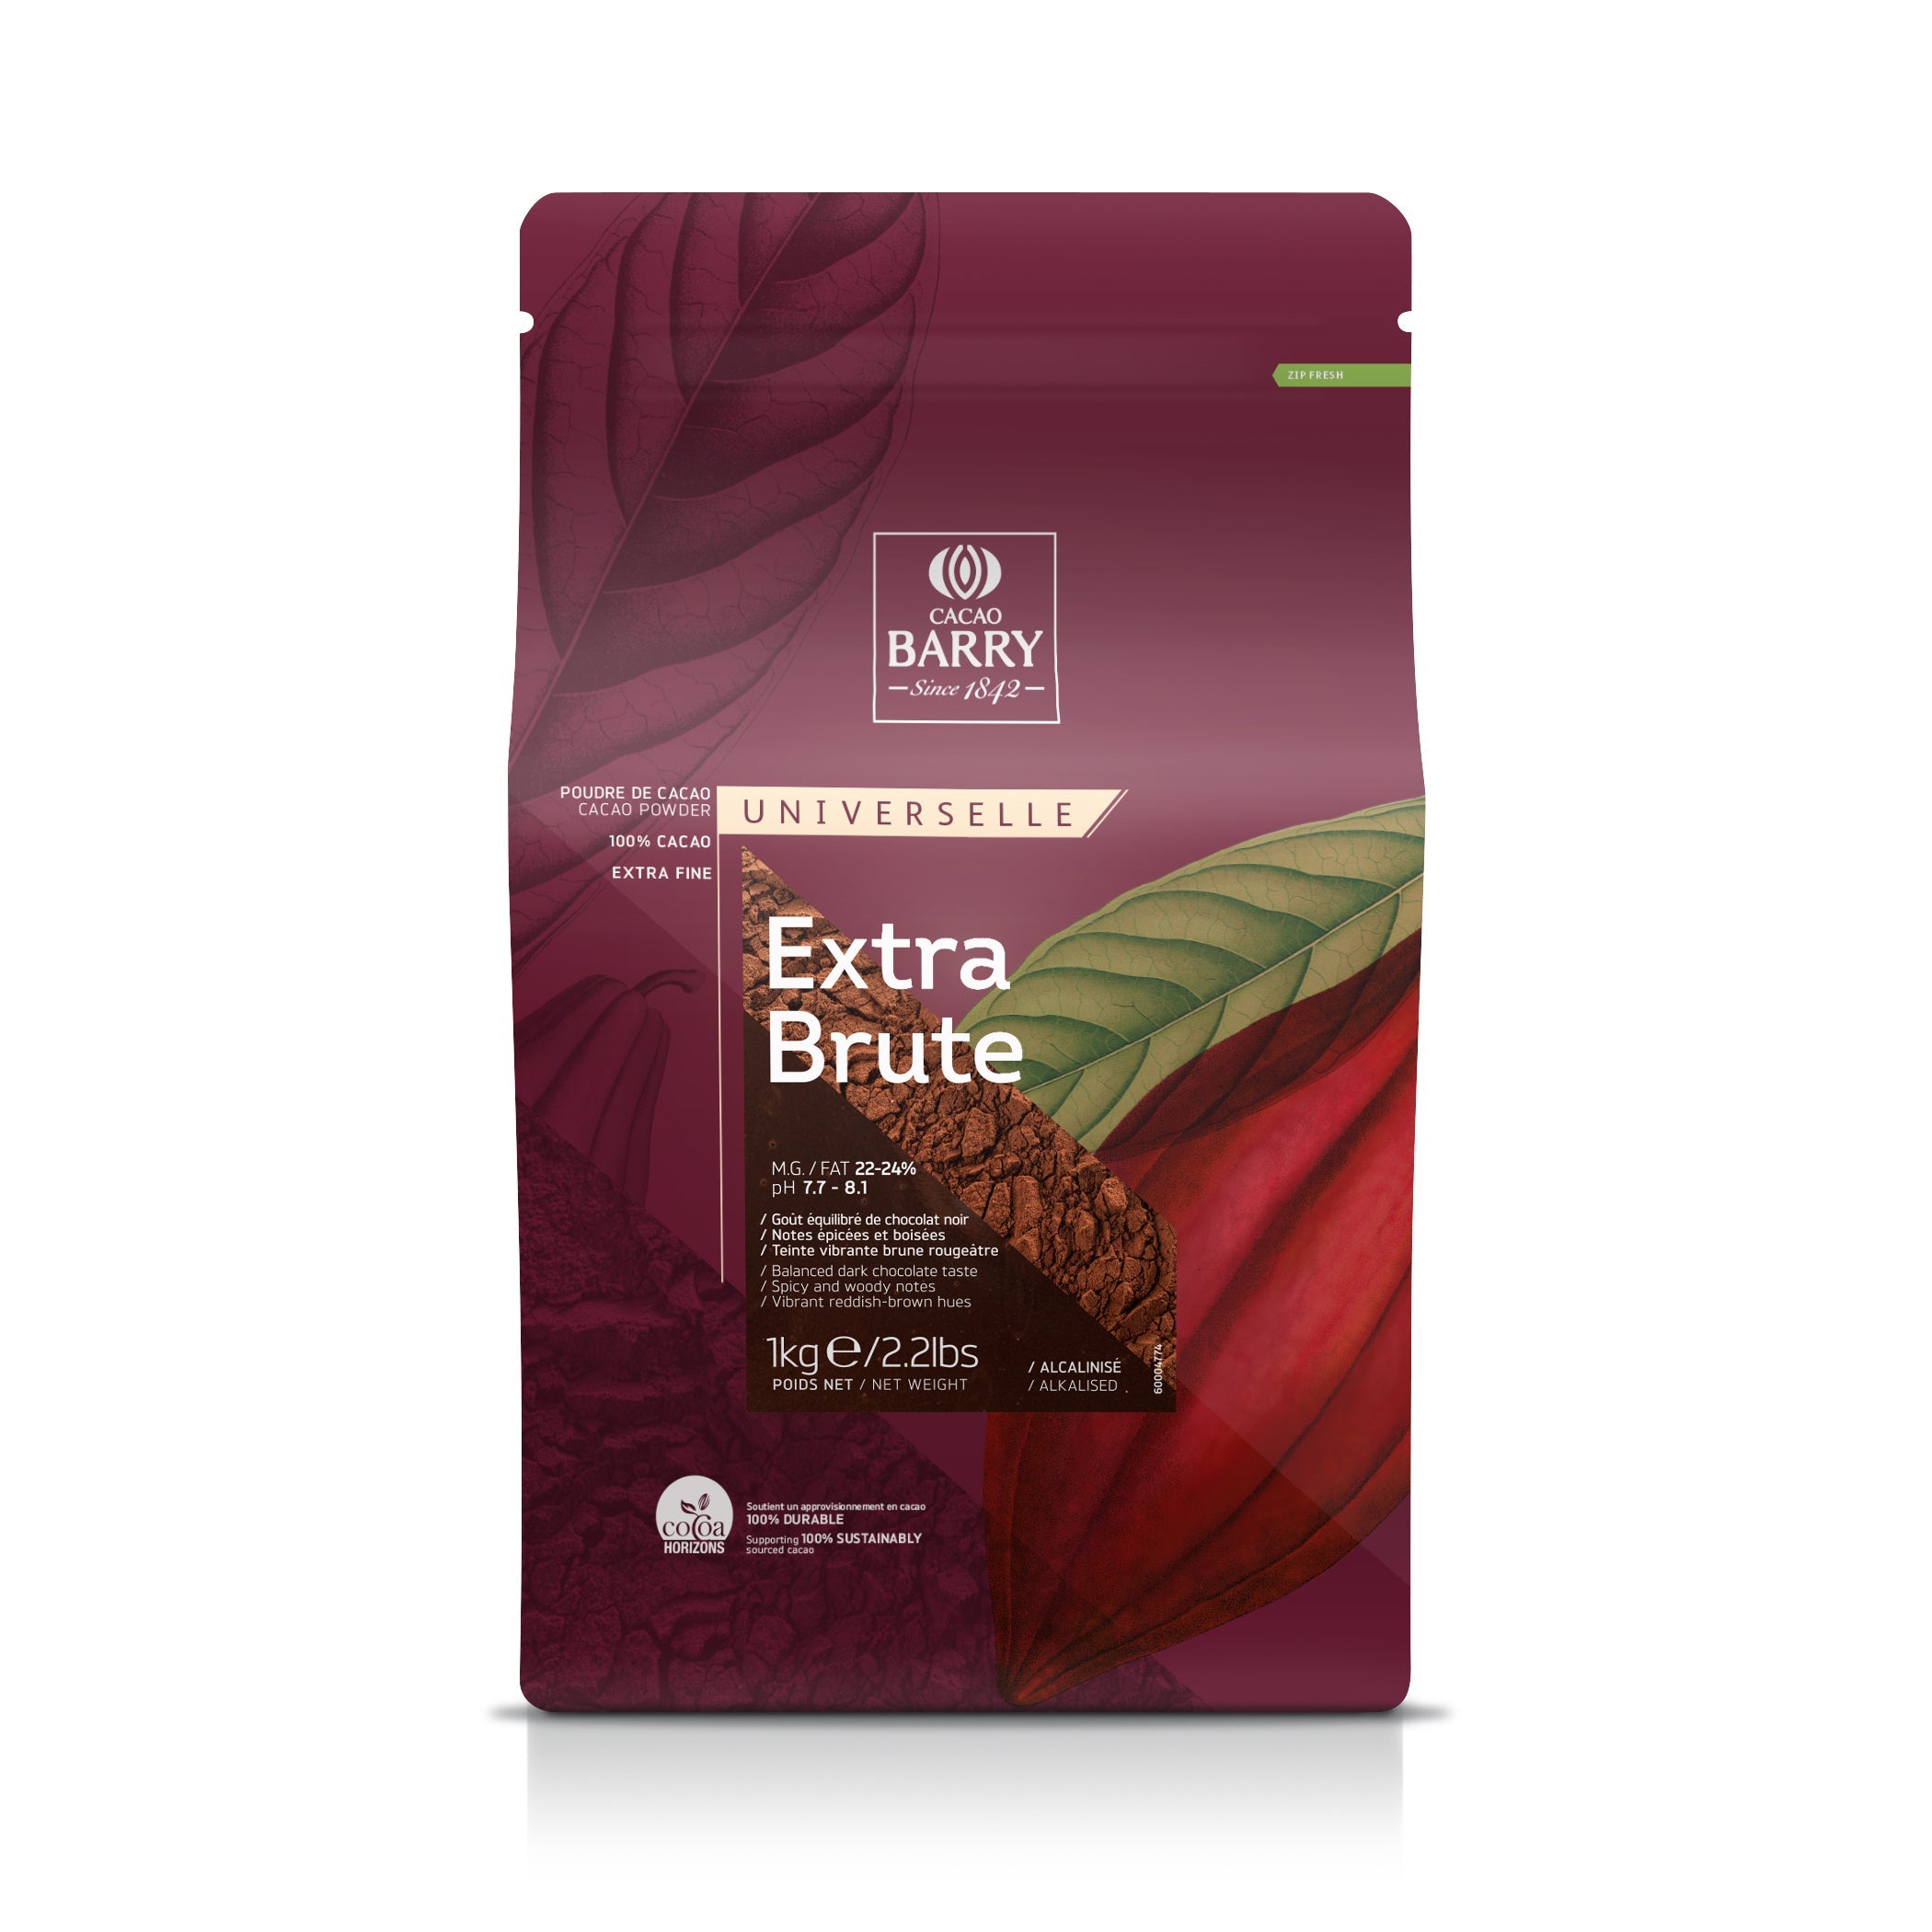 Cacao Barry - Cacao Powder - Extra Brute 22-24% - powder - 5kg bag